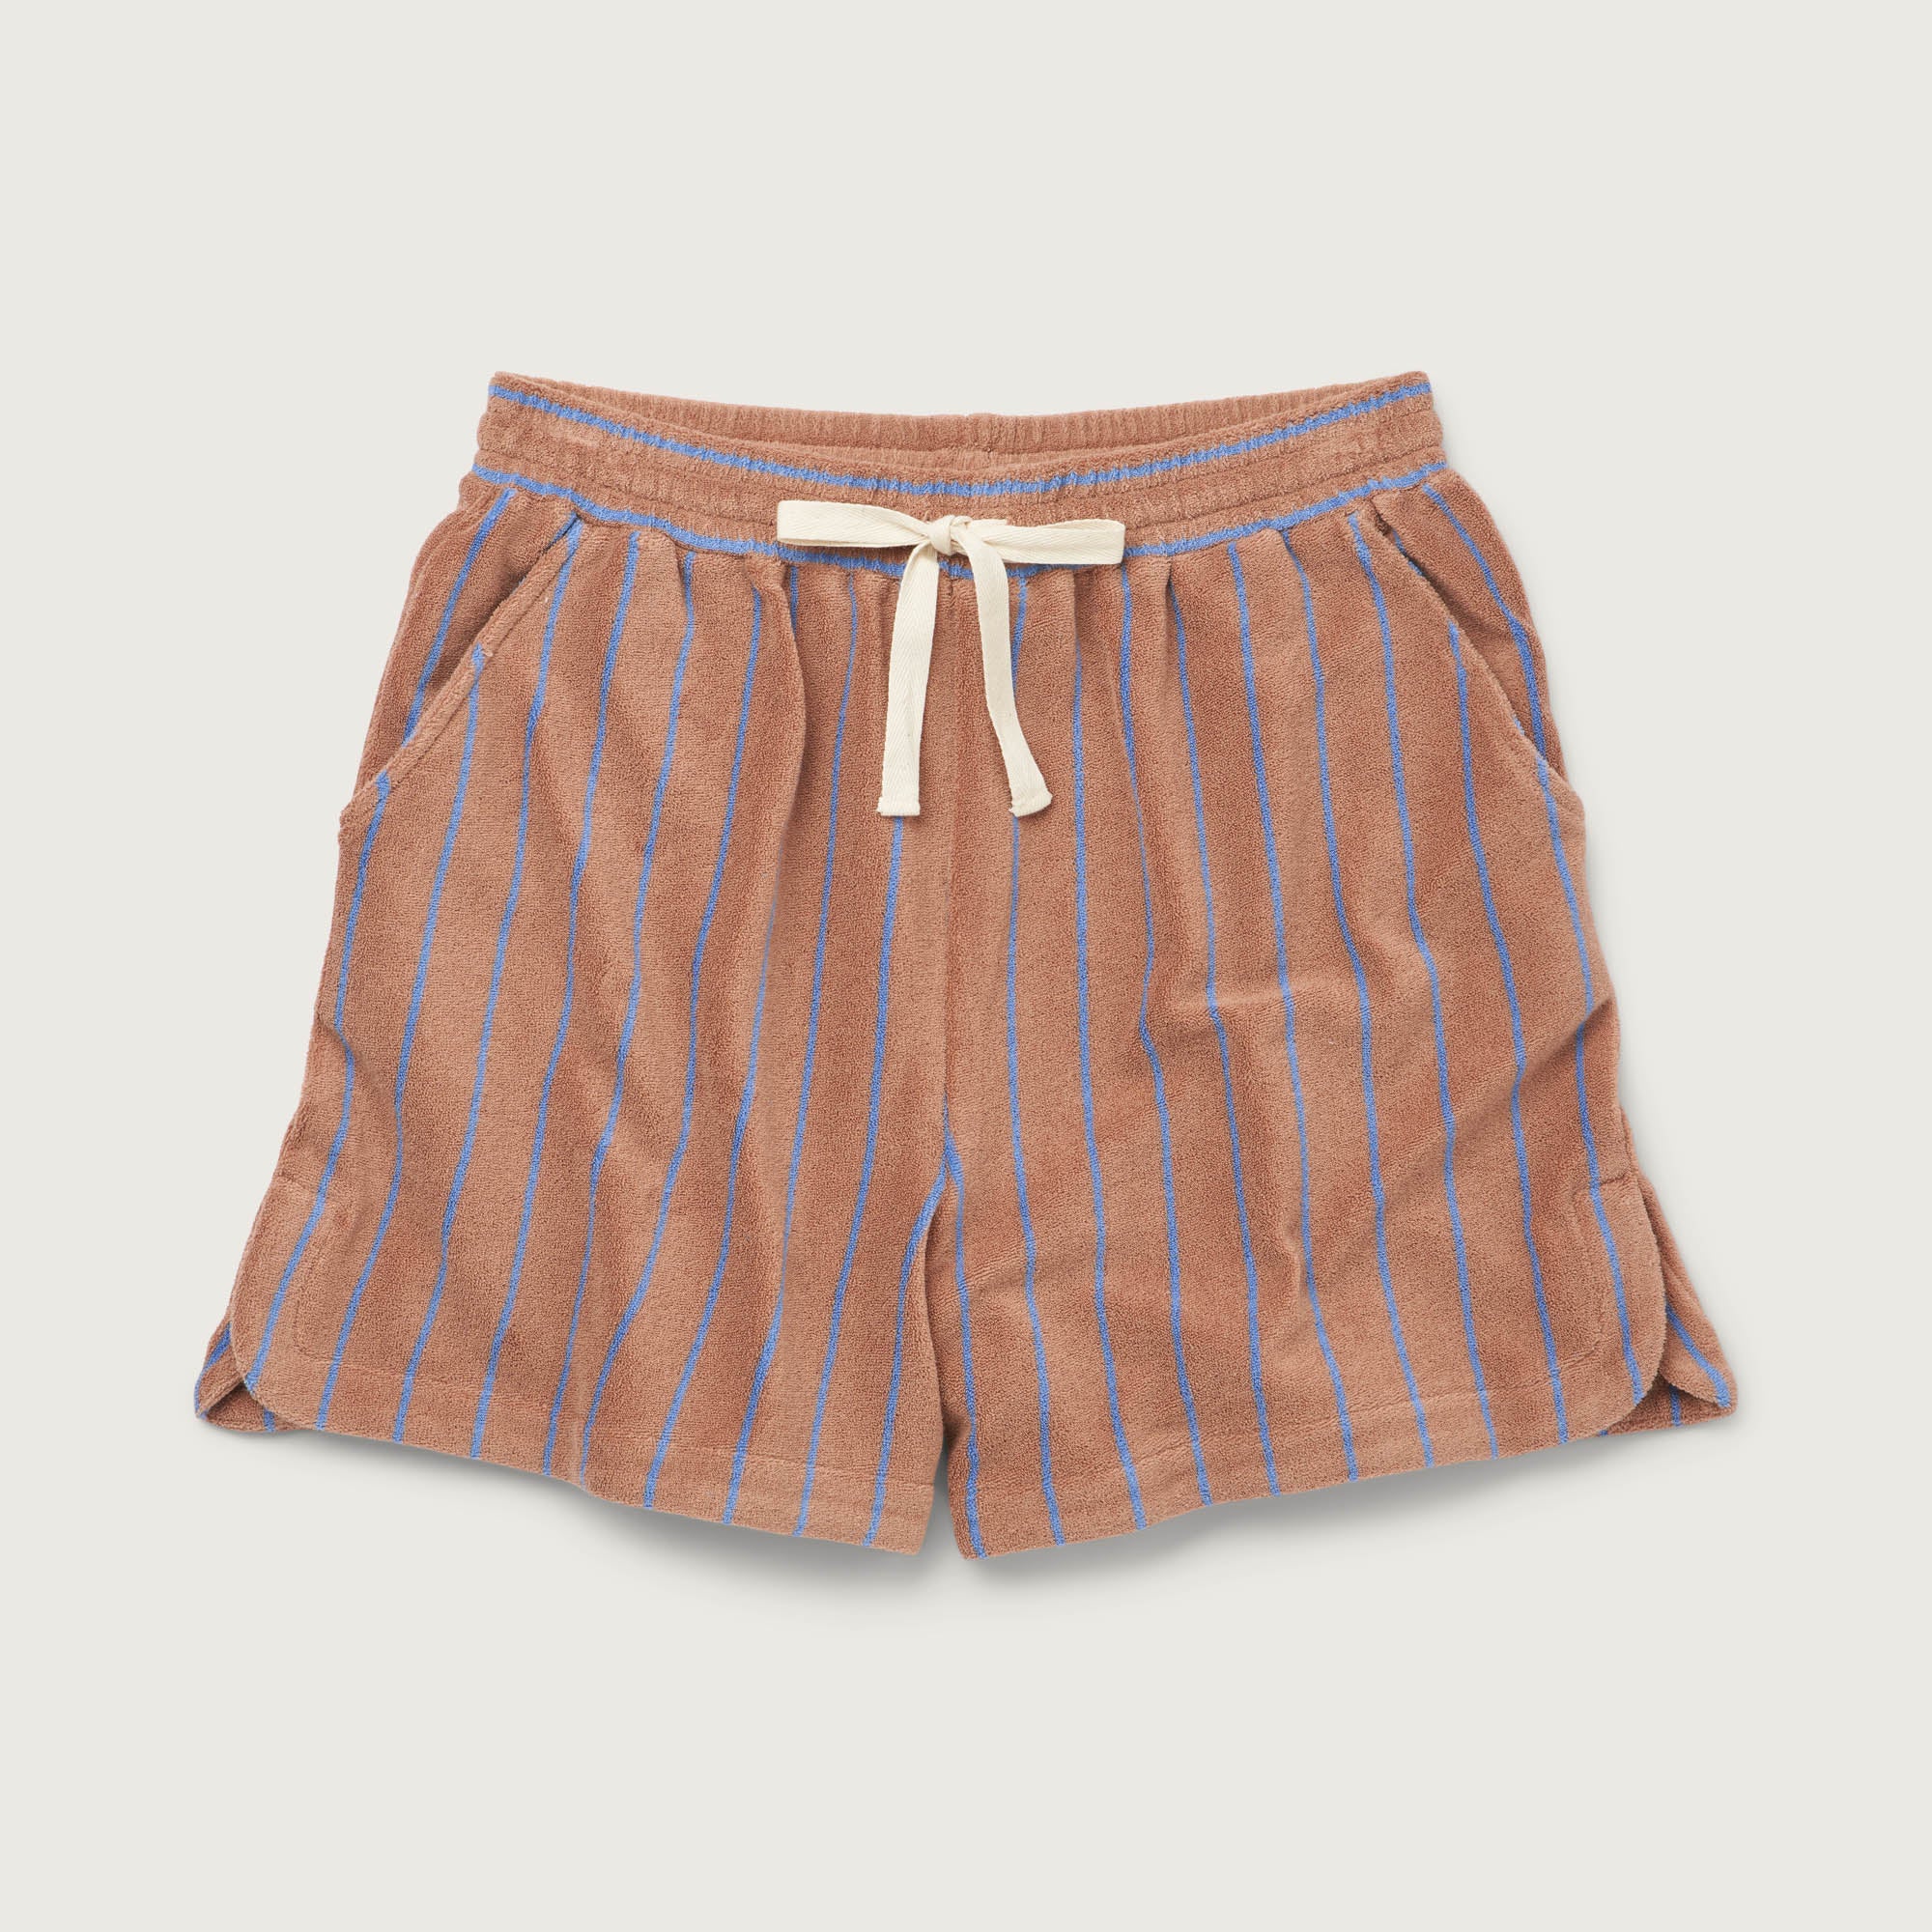 Bongusta, Product image, Naram Gym Shorts, camel & ultramarine, 3 of 3}